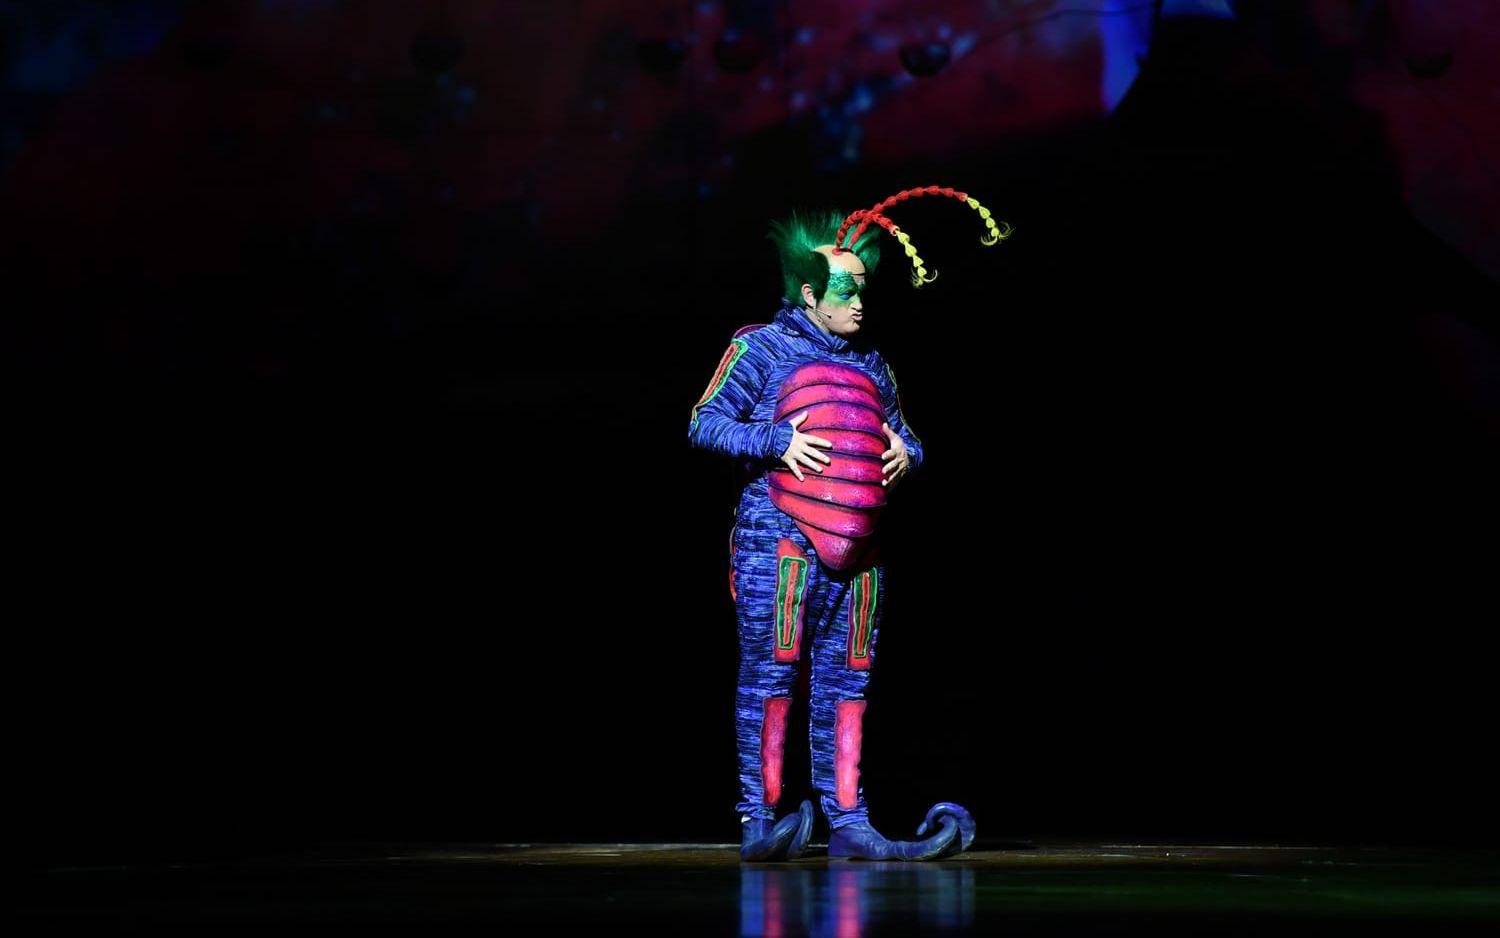 Cirque du soleil, den kanadensiska cirkusarnas cirkus, bjuder med ”Ovo” på formidabel luftakrobatik och konstnärligt hisnande akter. 